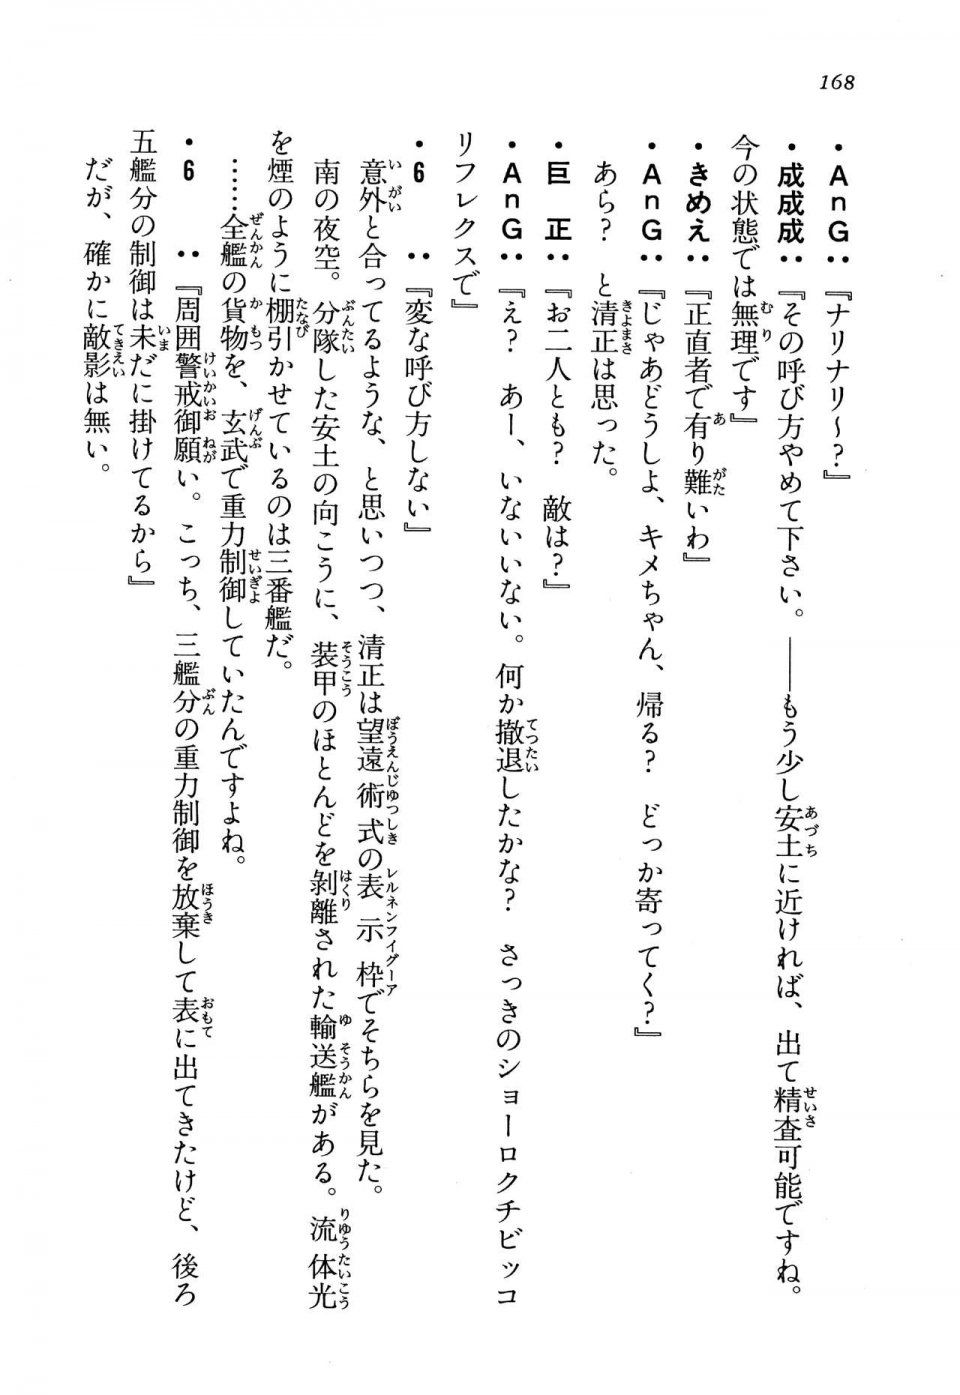 Kyoukai Senjou no Horizon LN Vol 13(6A) - Photo #168